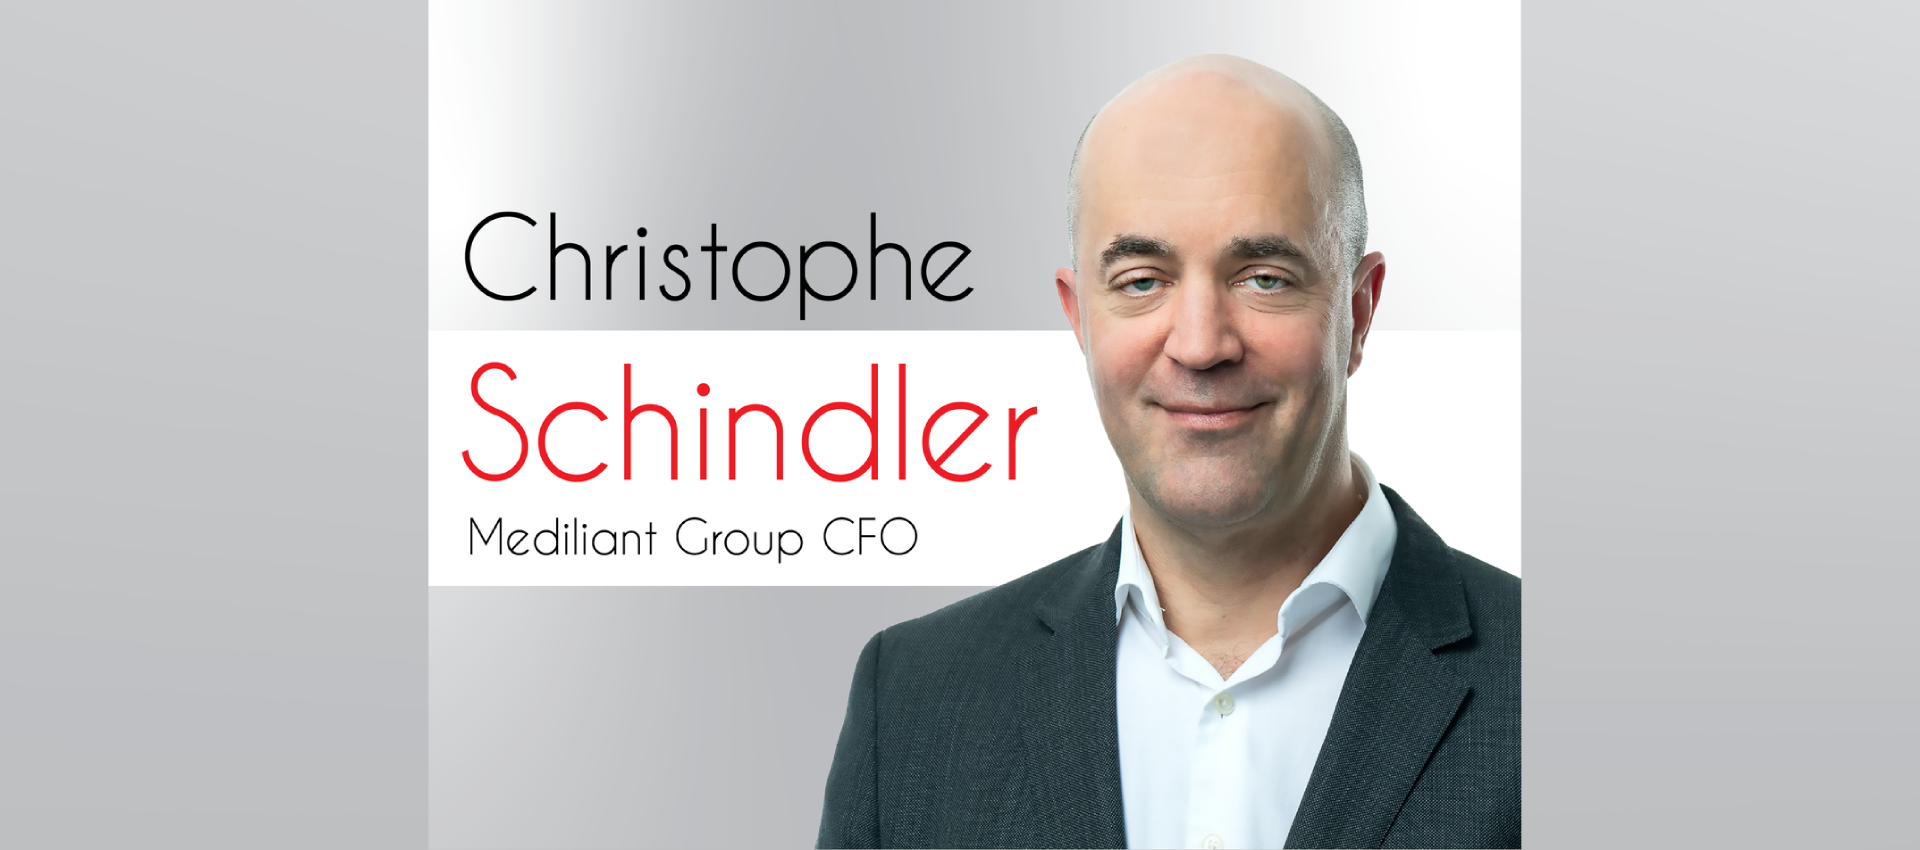 Christophe Schindler as New CFO